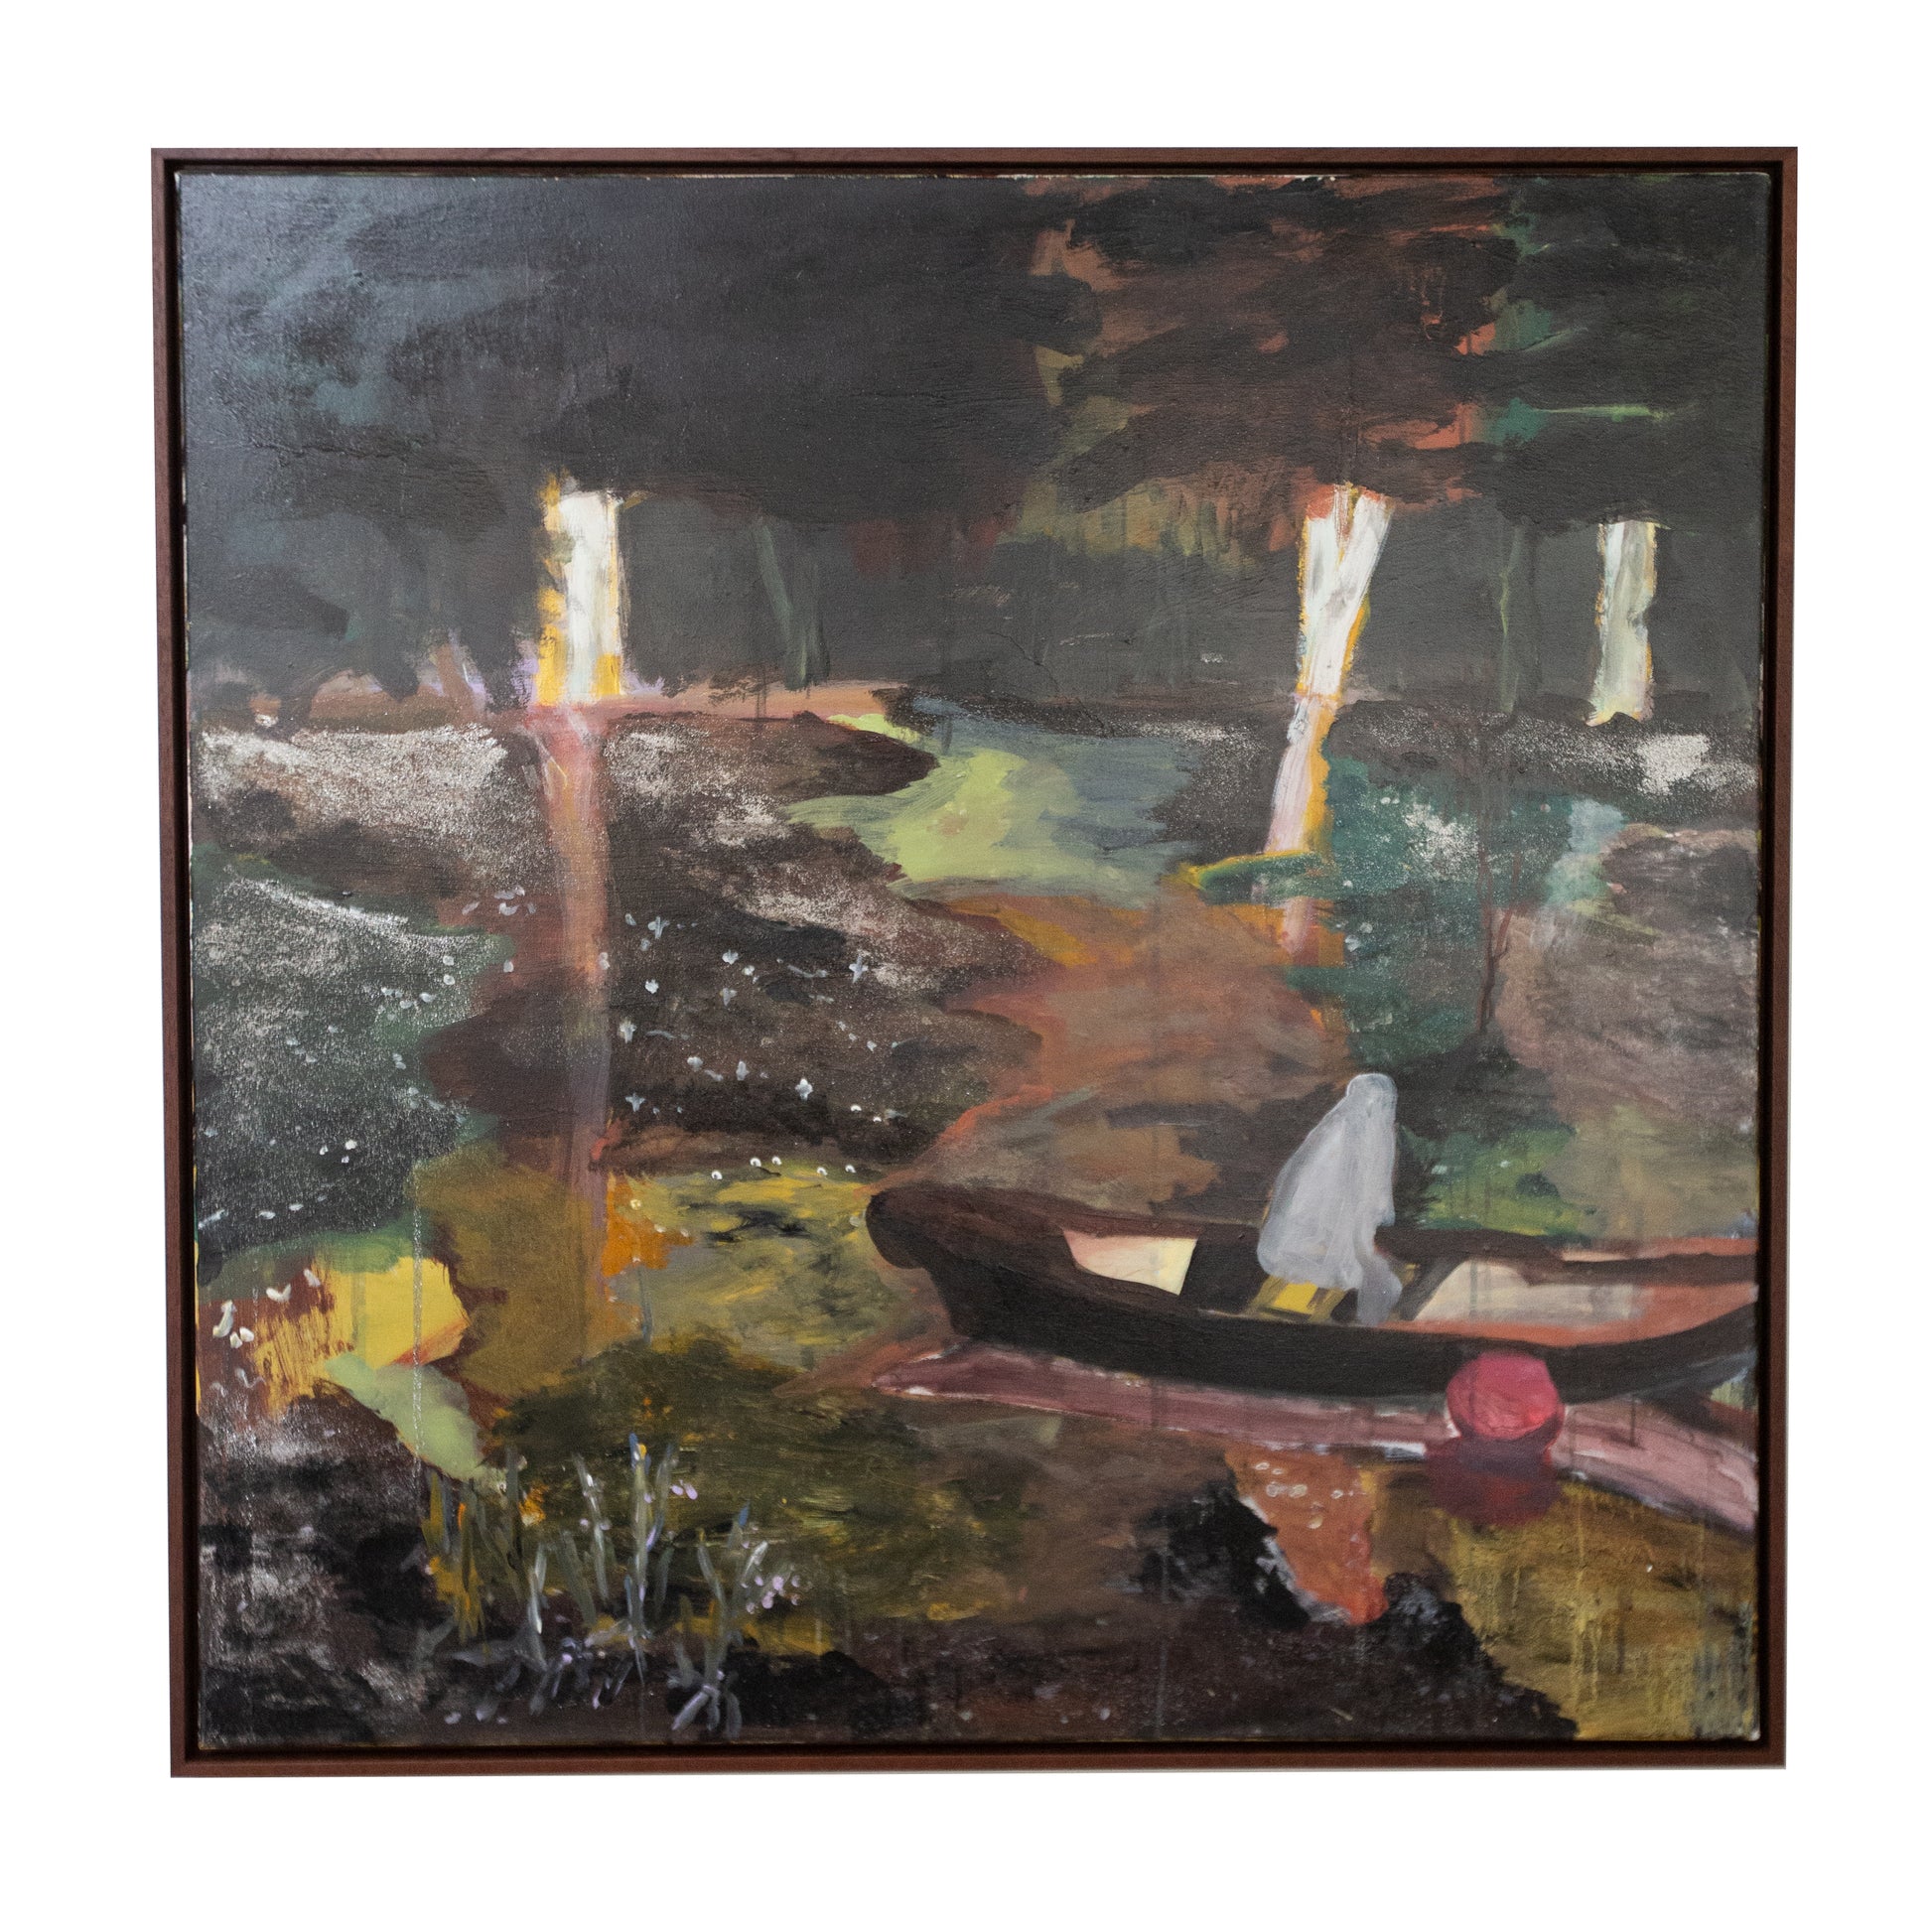 Swampy waters - Smolensky Gallery